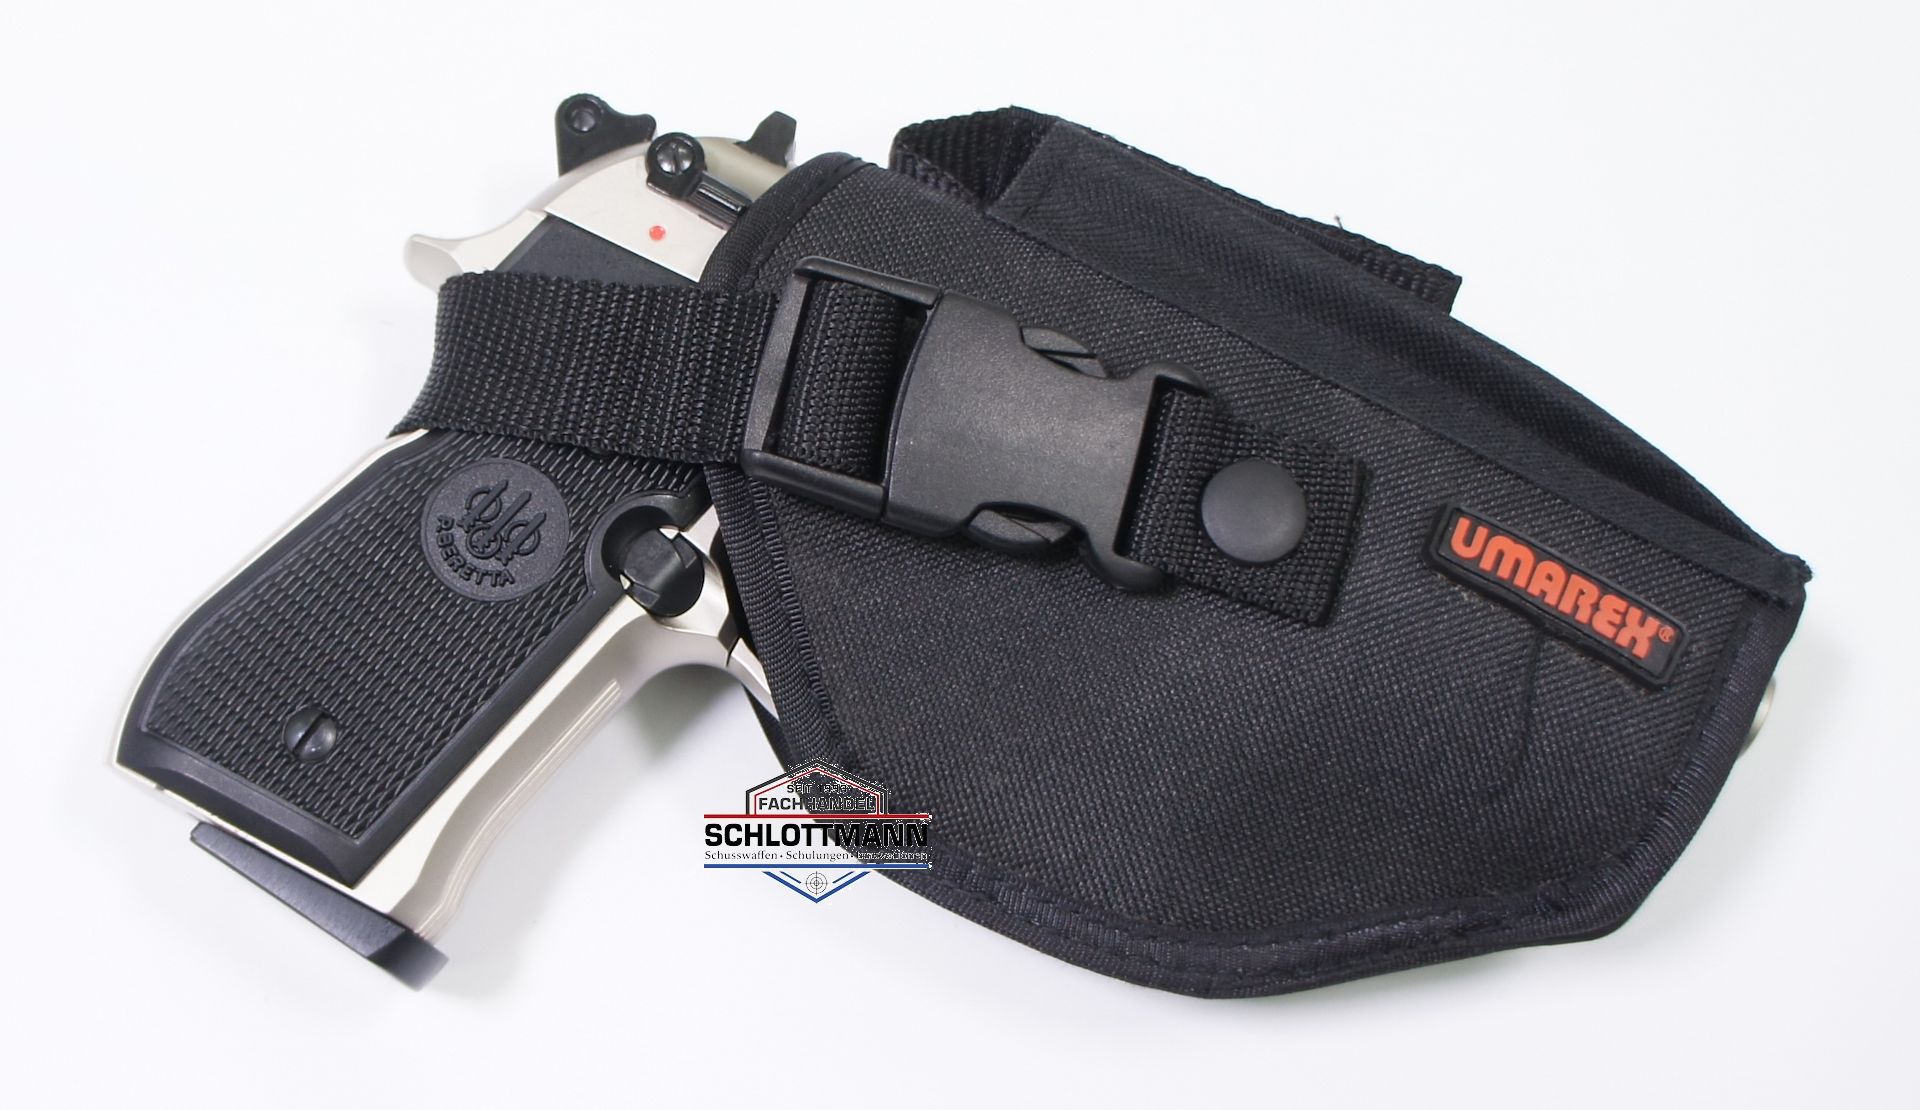 Beispiel vom Gürtelholster der Marke Umarex mit Pistole Modell Beretta 92 FS